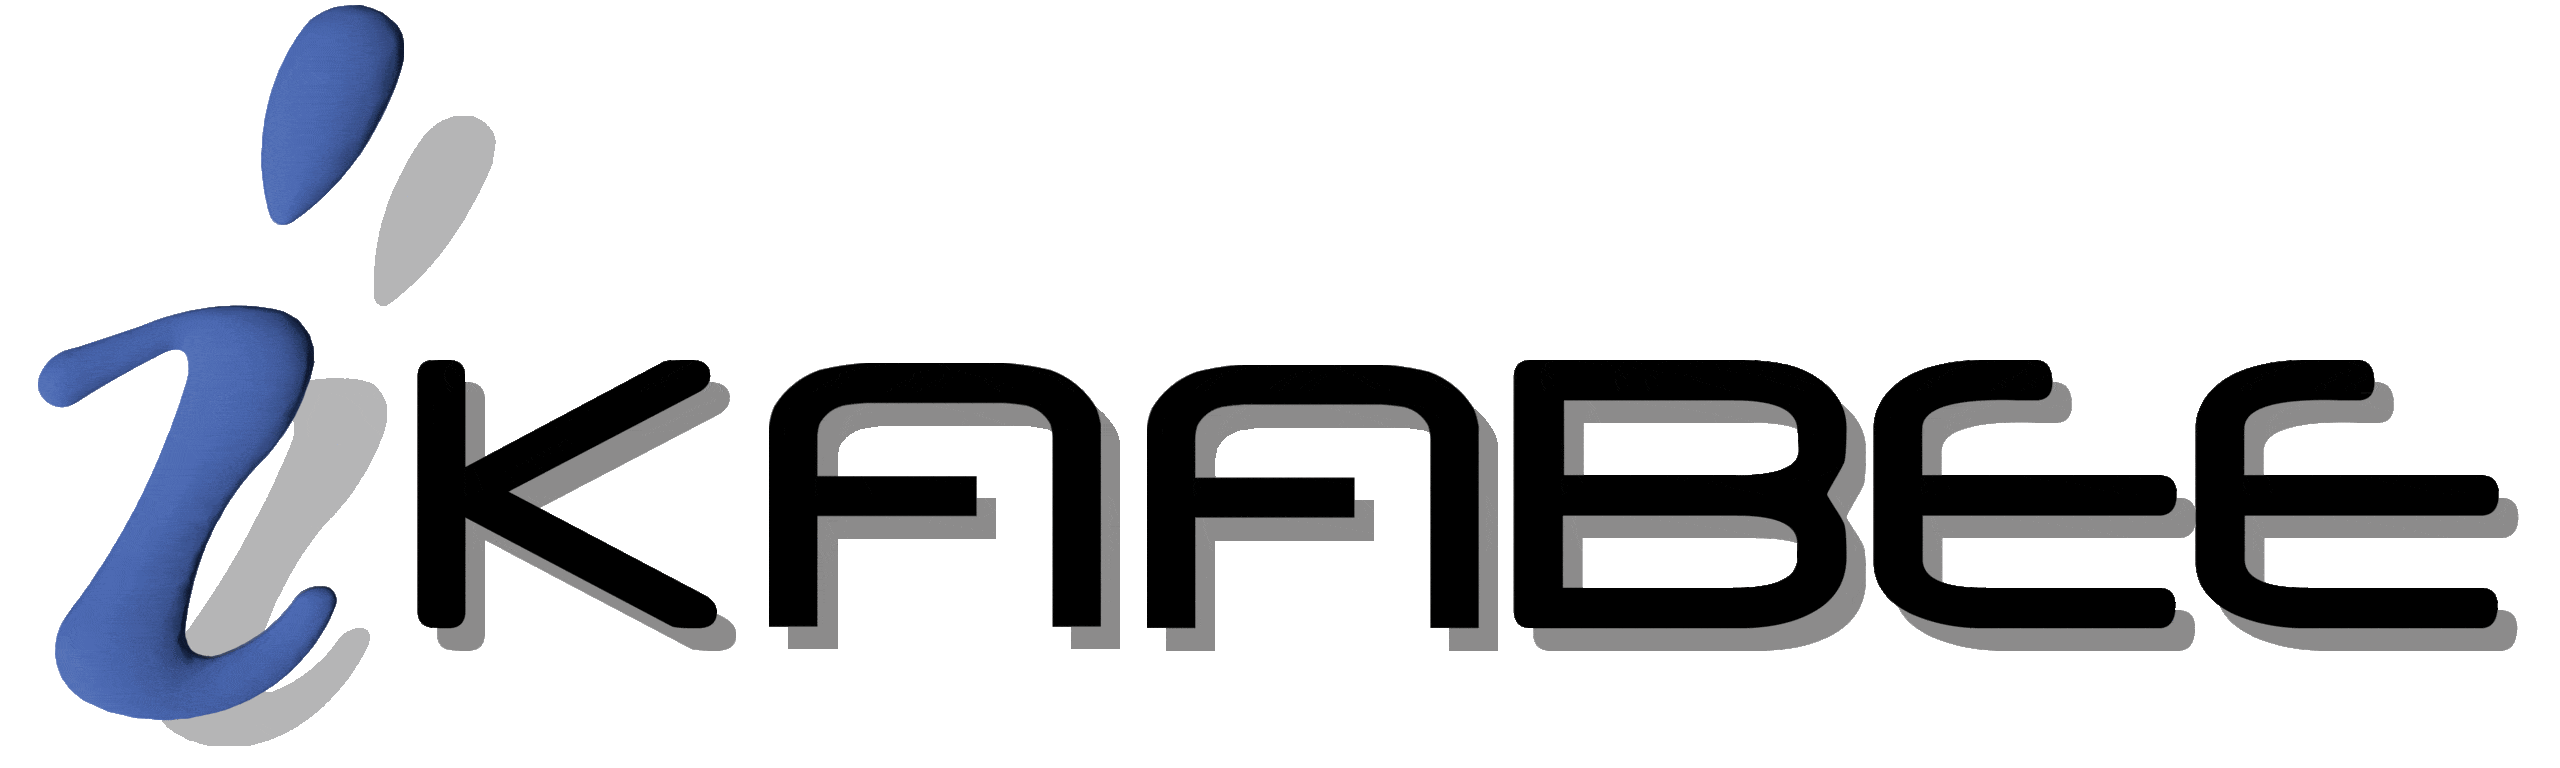 Ikaabee logo